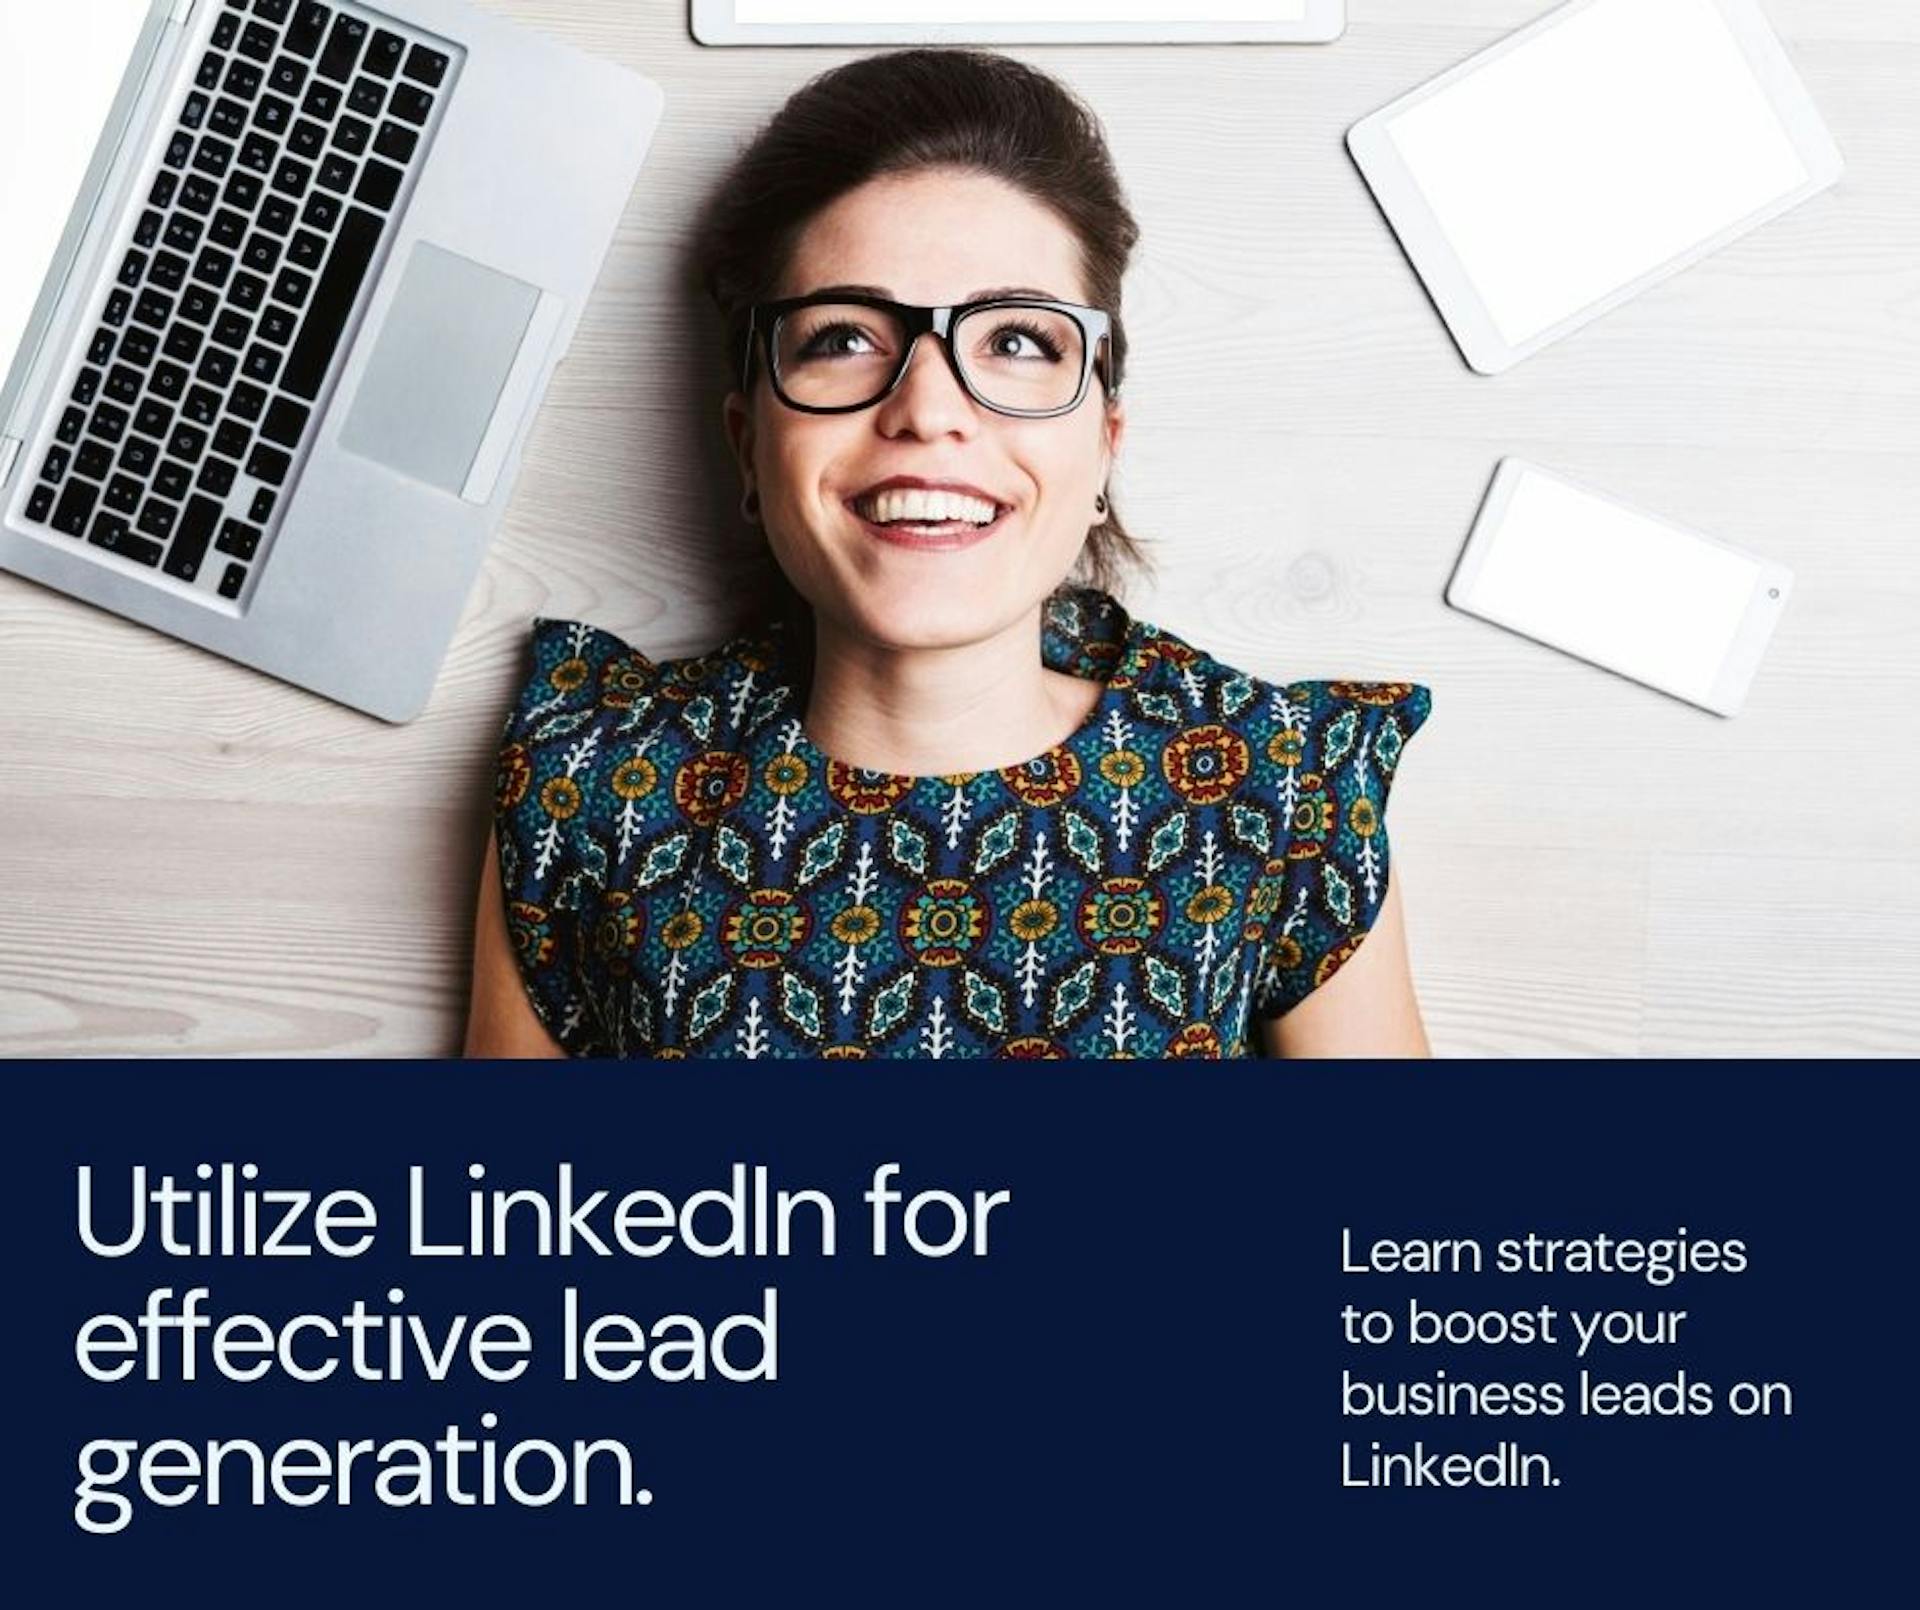 featured image - Como obter leads de negócios no LinkedIn?